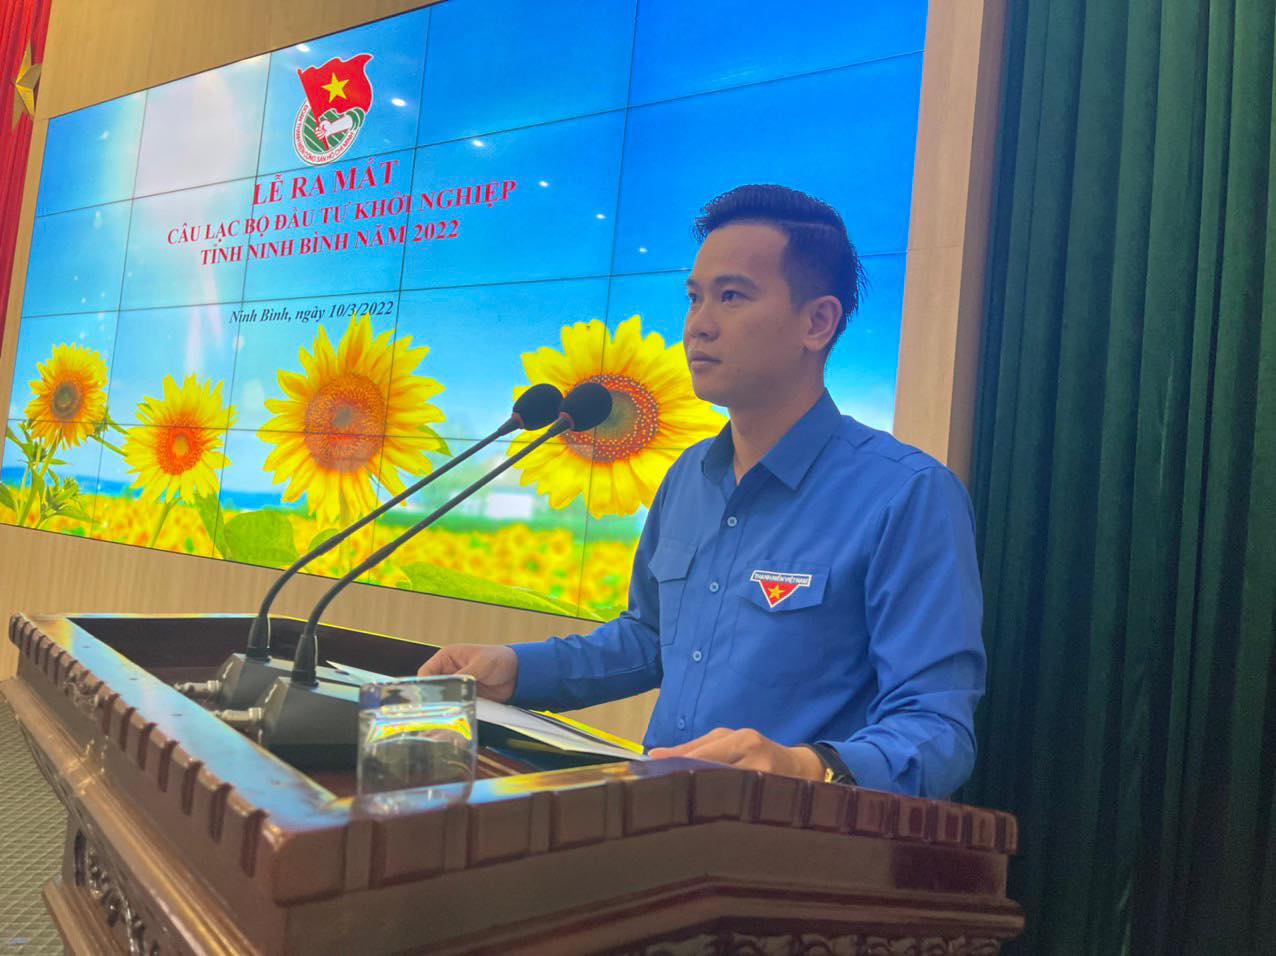 Lễ ra mắt Câu lạc bộ đầu tư khởi nghiệp tỉnh Ninh Bình năm 2022